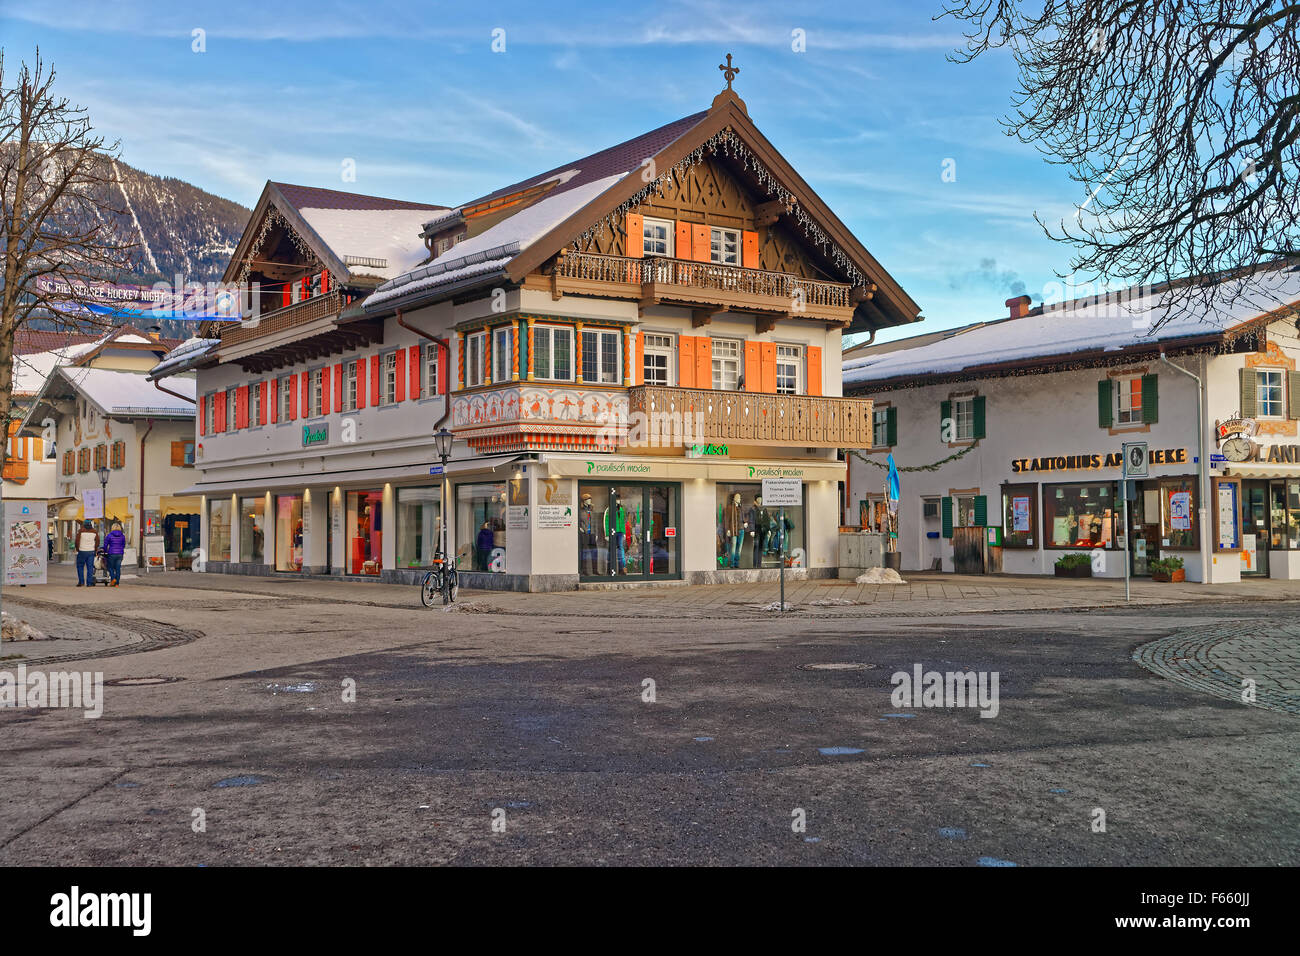 GARMISCH-PARTENKIRCHEN, ALLEMAGNE - 06 janvier 2015 : charmante petite ville bavaroise avec de magnifiques maisons décorées sur un jour d'hiver ensoleillé. Garmisch-Partenkirchen, Alpes bavaroises, Allemagne Banque D'Images